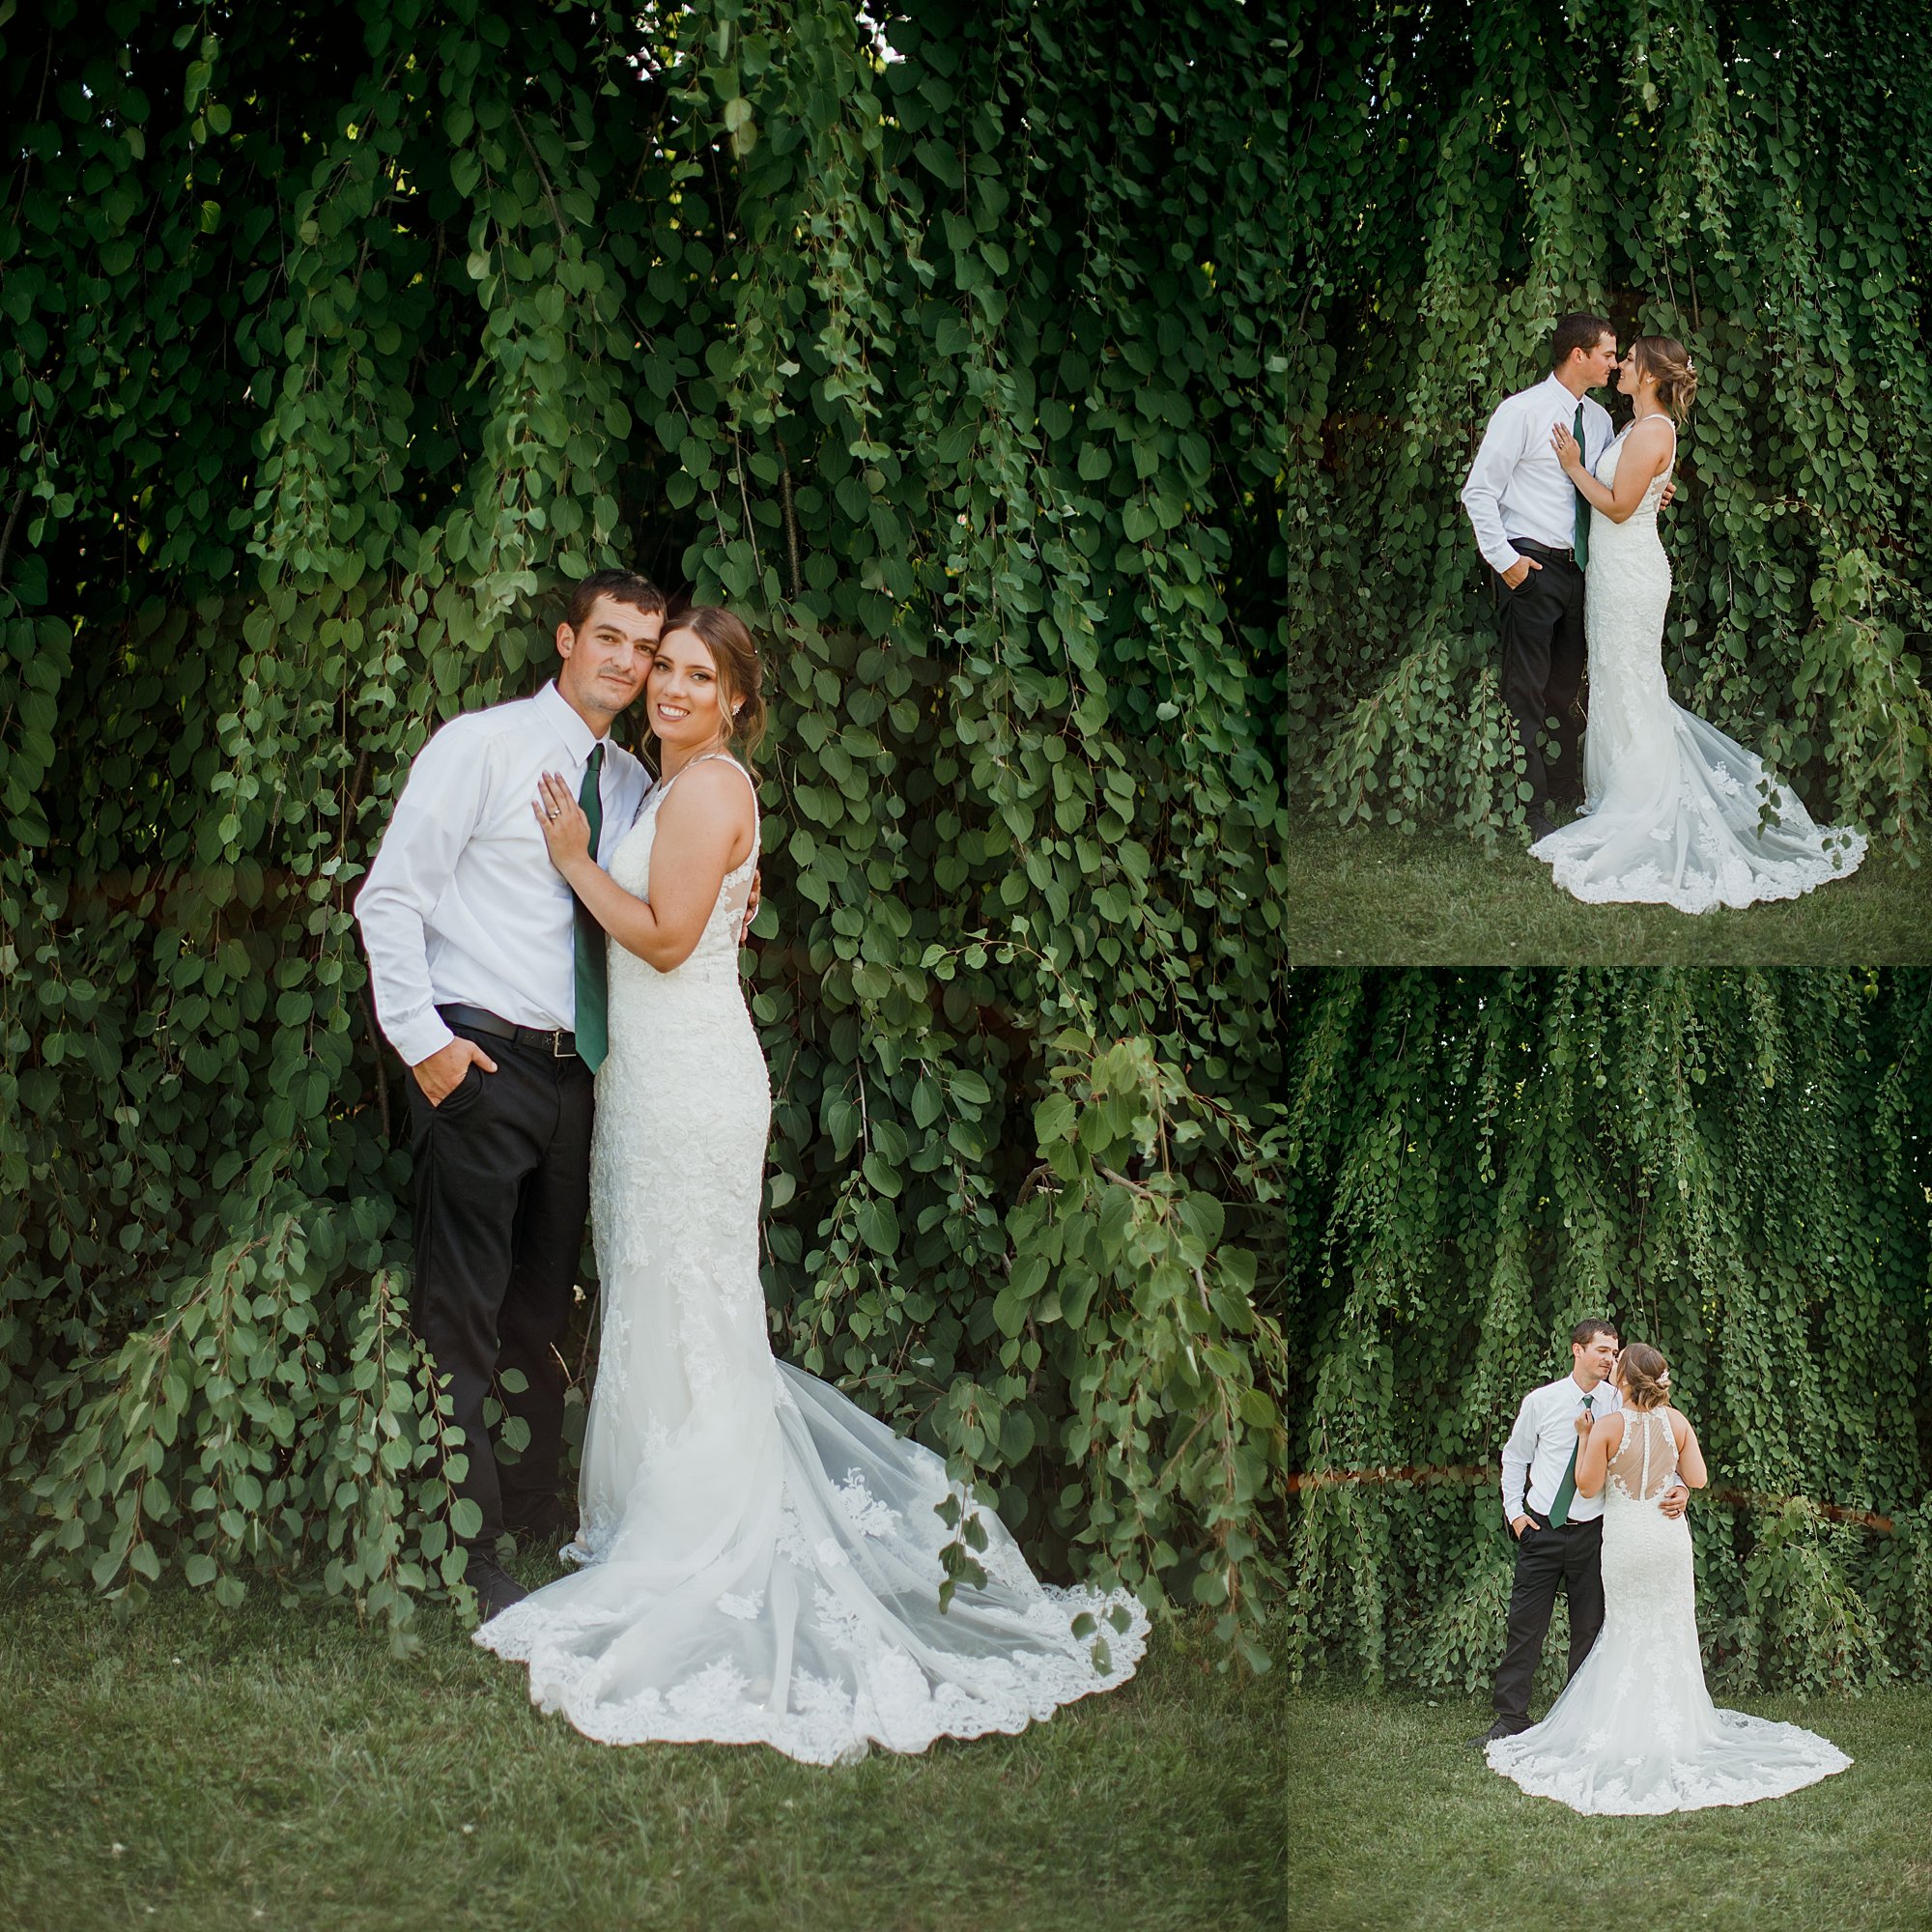 fernwood botanical colorful classic wedding photography64.jpg